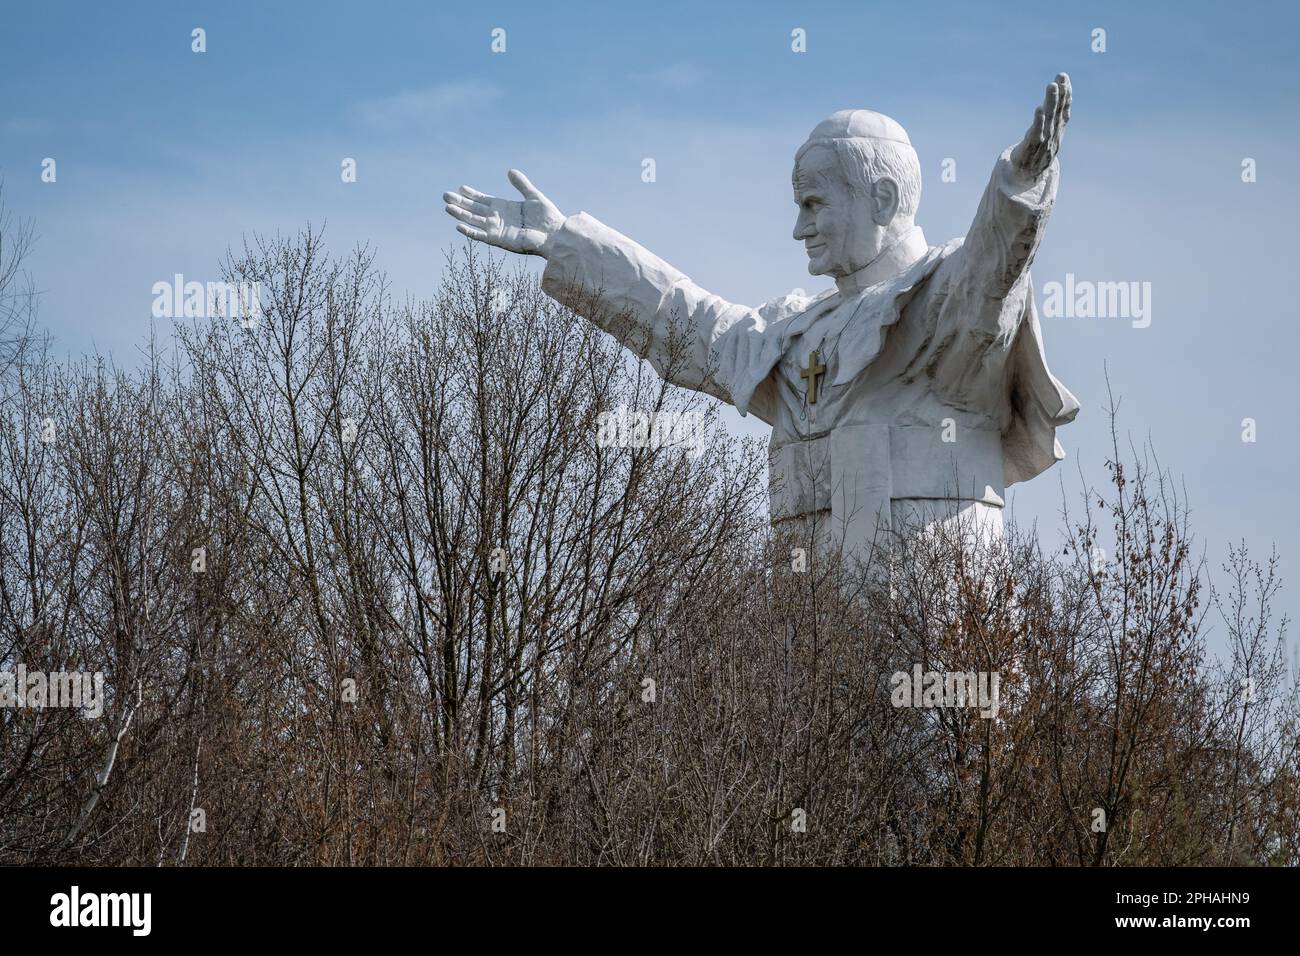 Das Denkmal für Johannes Paul II., das zwischen den Bäumen zu sehen ist. Das höchste Denkmal in Polen von Papst Johannes Paul dem Zweiten. Das Denkmal wurde 2013 erbaut und in Czestochowa platziert. Heute ist es vergessen. Keine Pilger kommen, um es zu sehen. Es bleibt allein unter den Bäumen. Stockfoto